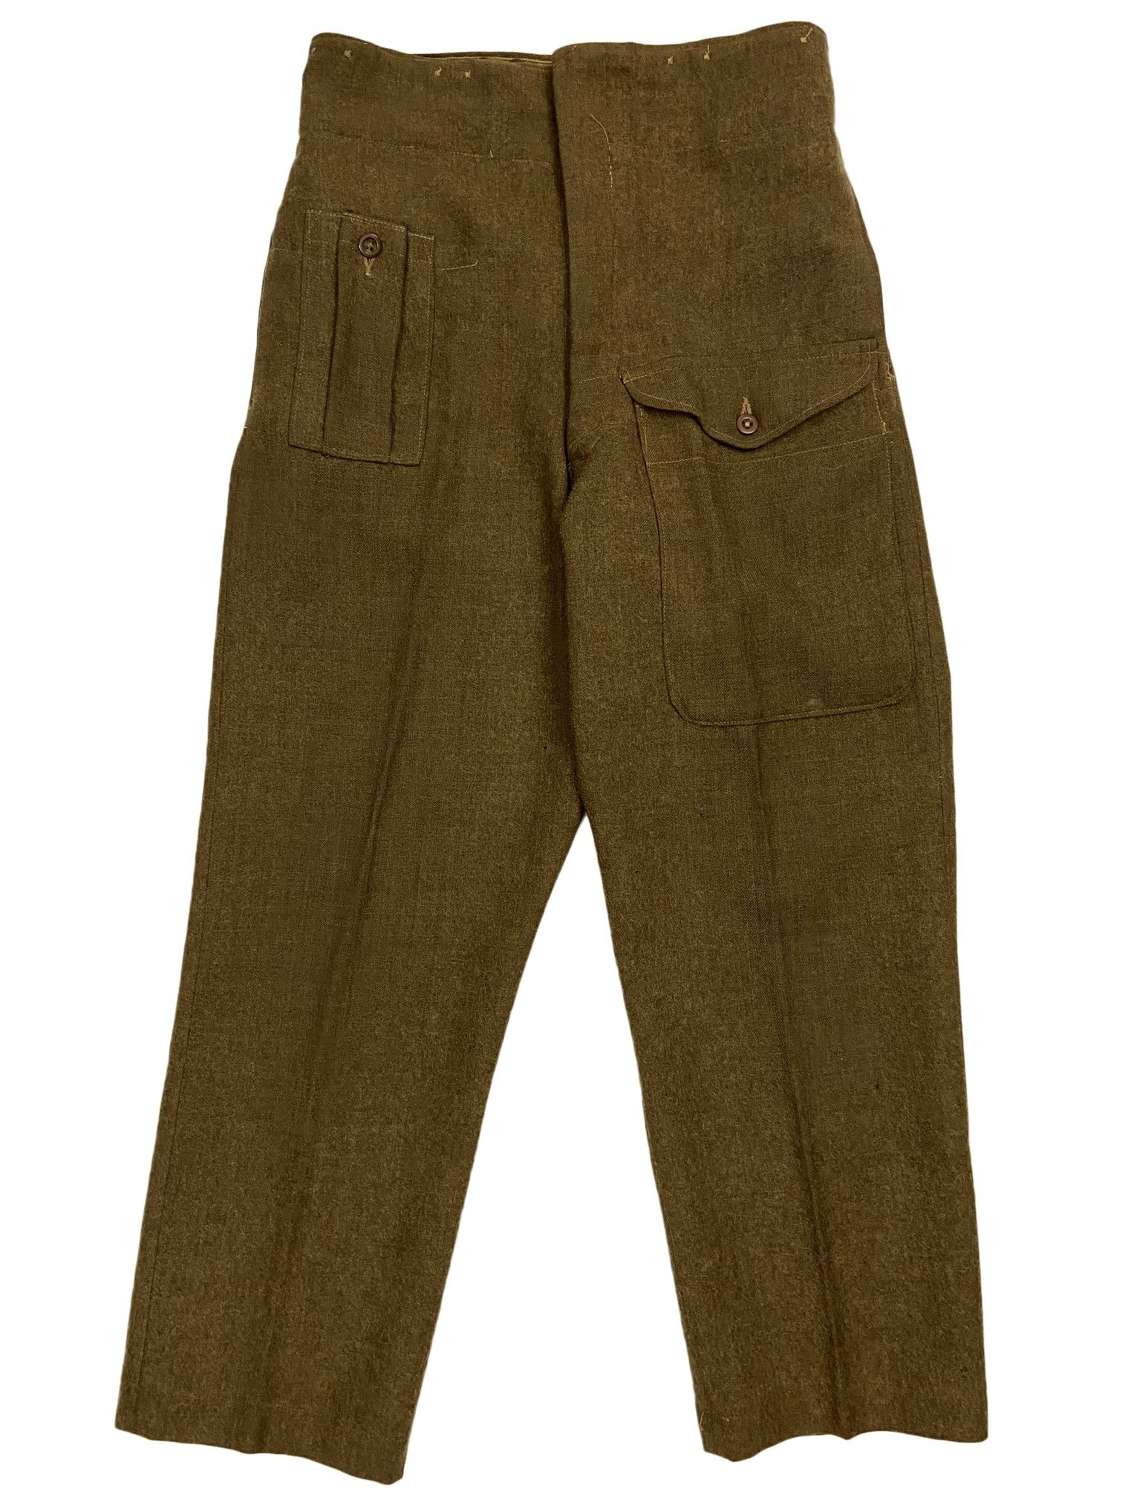 Original 1946 Pattern British Army Battledress Trousers - Size 11